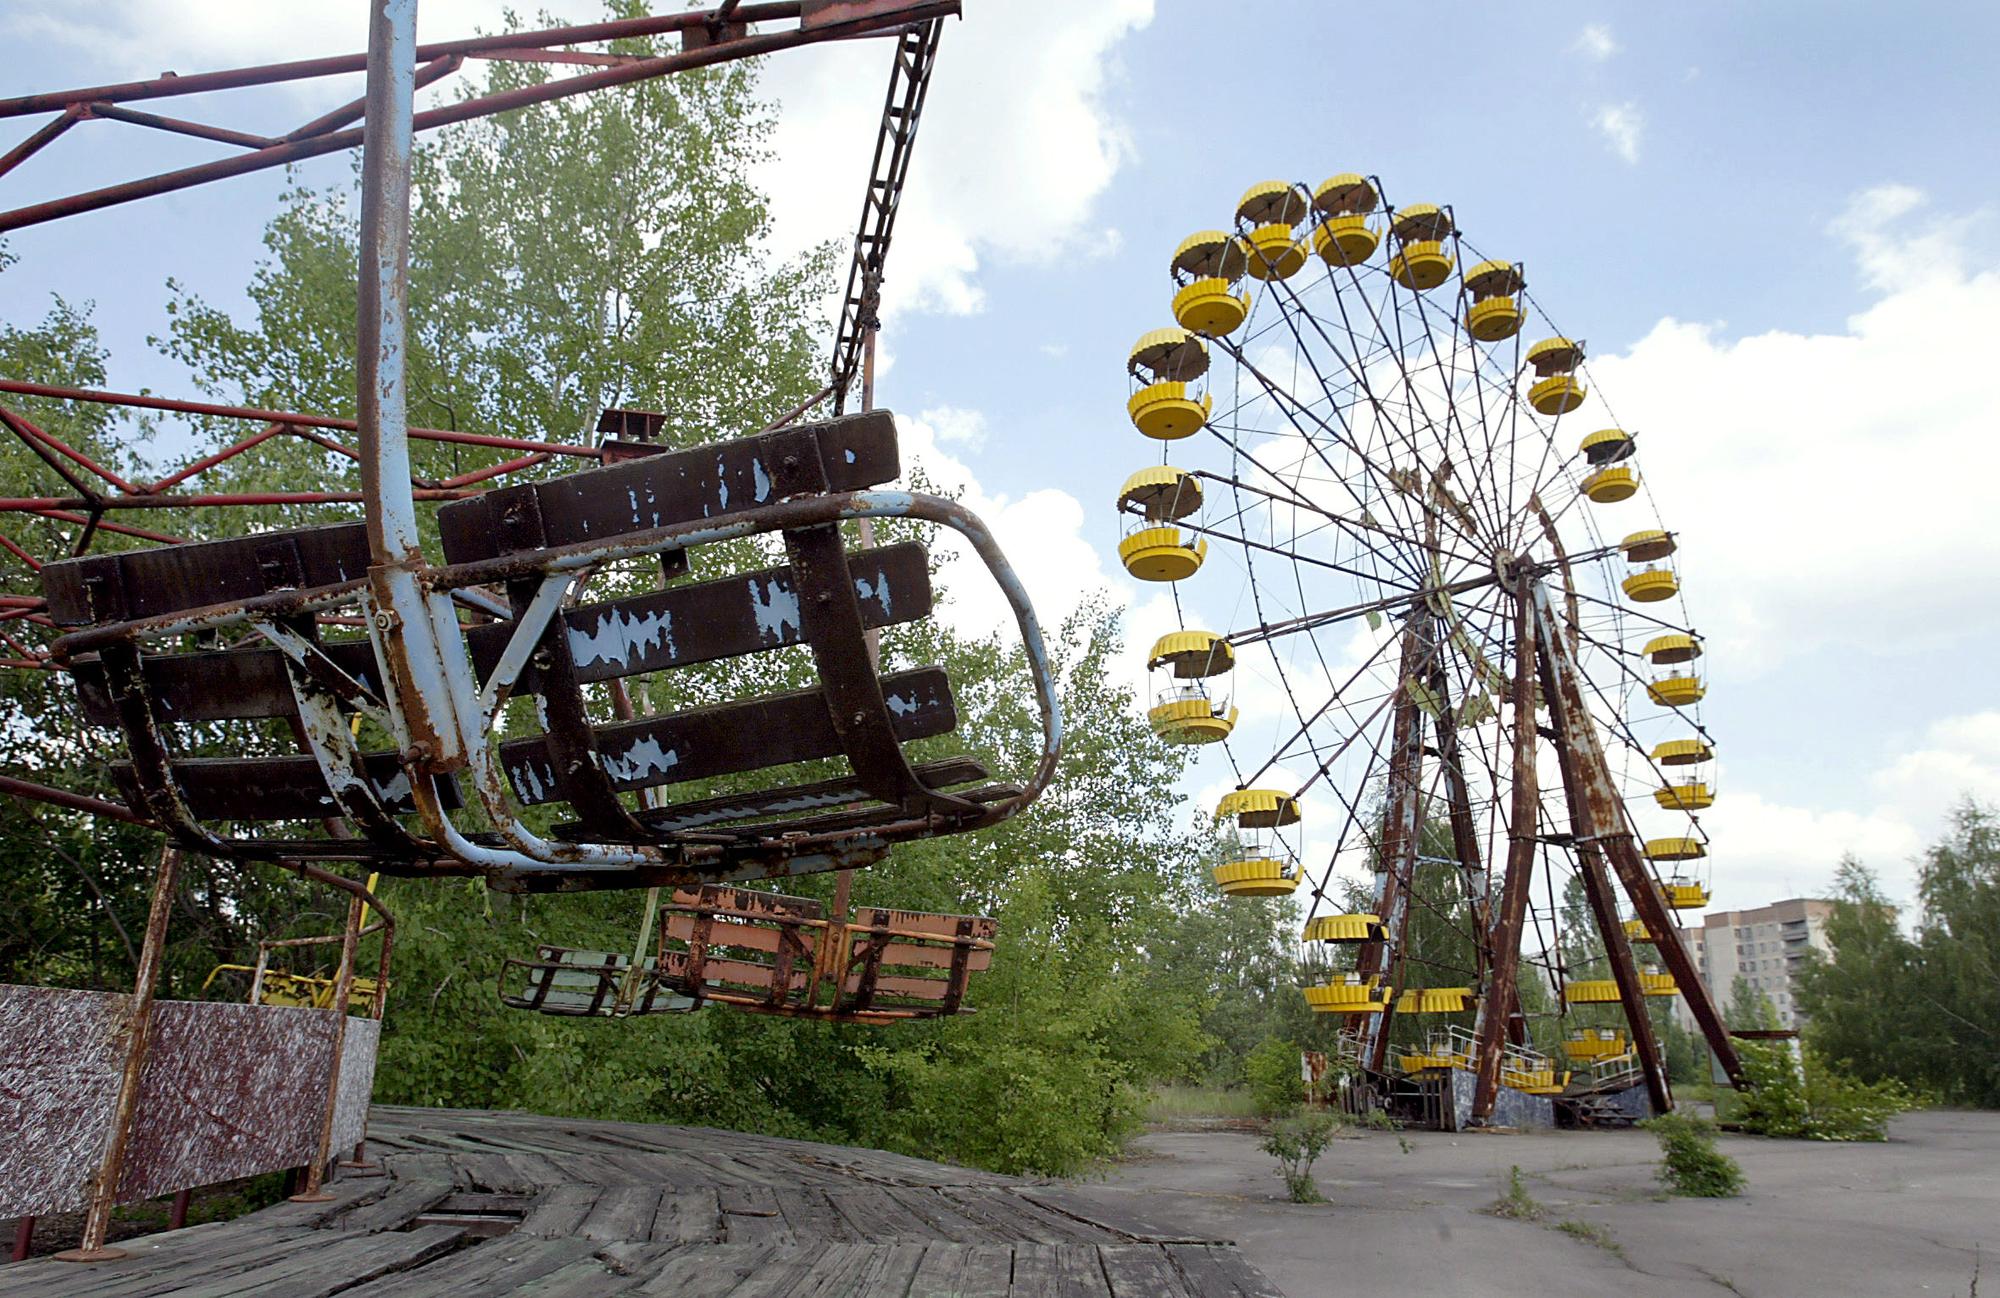 A Pripyat, en Ukraine, une grande roue, carrousel et autres attractions sont les stars de ce parc fantôme non loin de la ville de Tchernobyl (mai 2003). [AFP - SERGEI SUPINSKY]